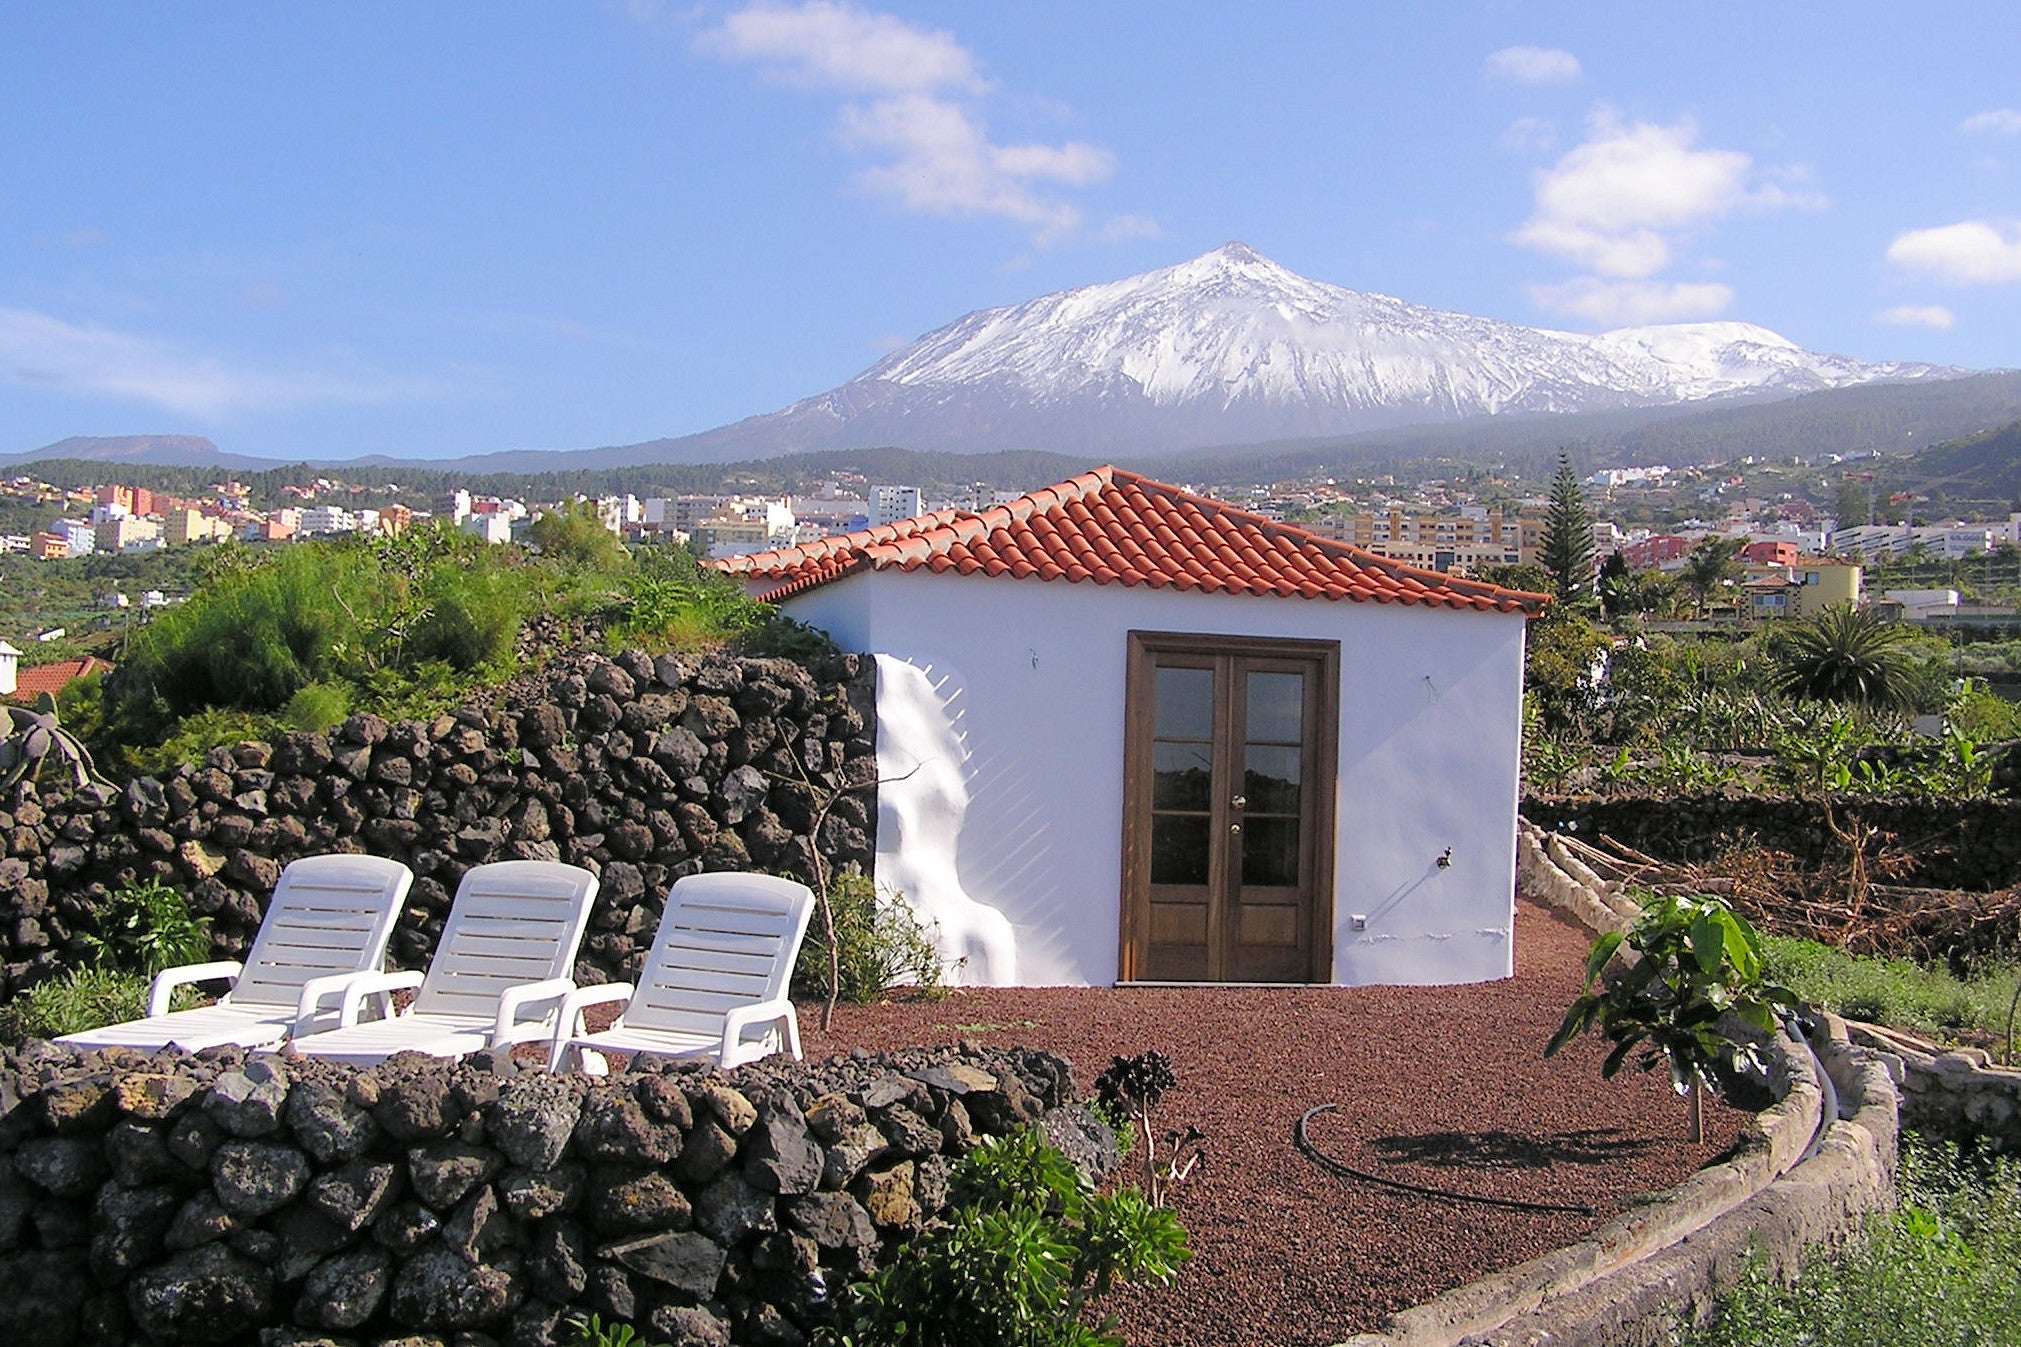 Tenerife in November offers pleasant temperatures (Cachet Travel )